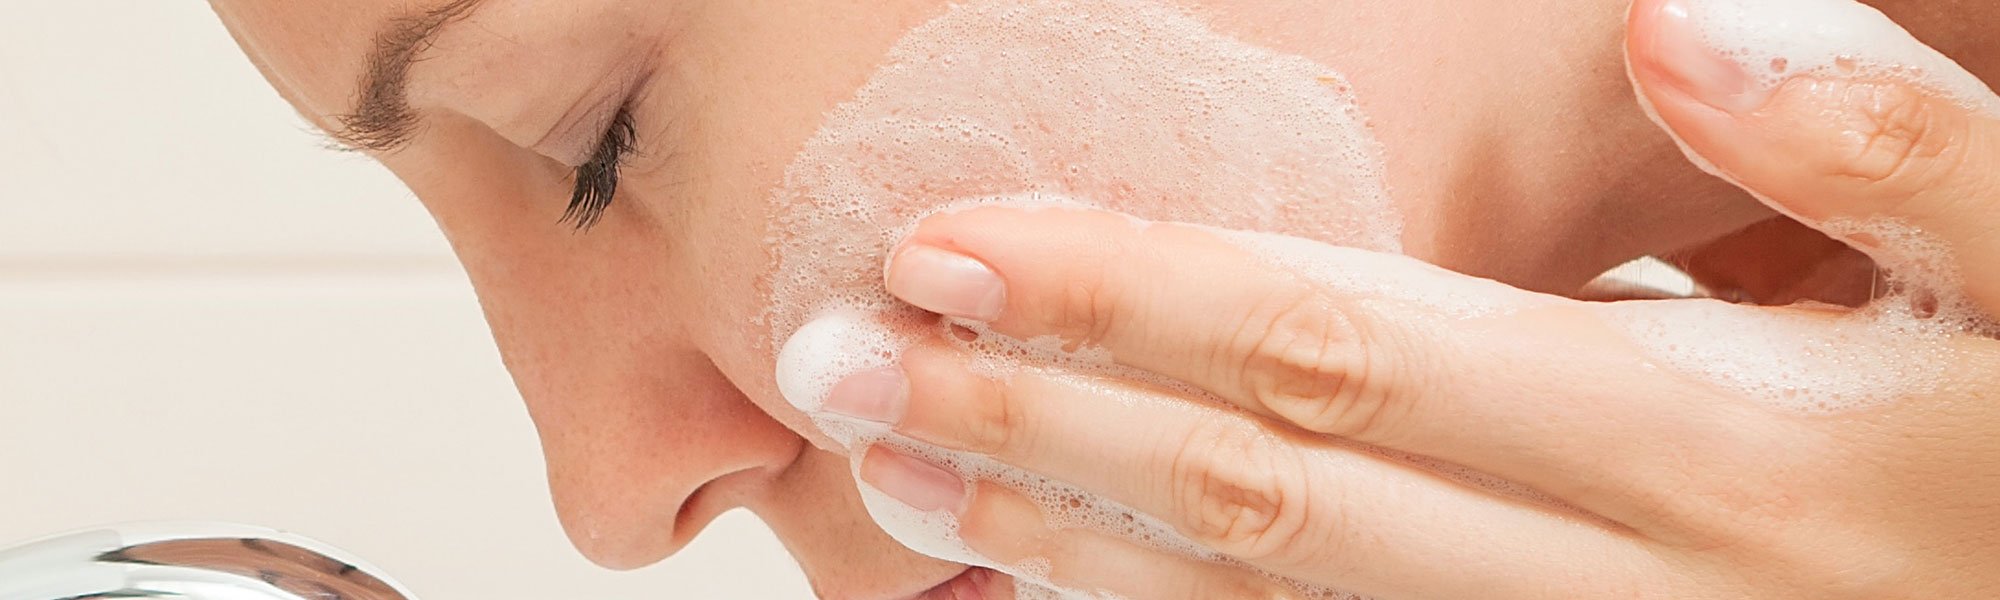 Lleva a cabo una higiene facial exhaustiva gracias a los productos de limpieza de L’Oréal Paris. Agua micelar, geles limpiadores, mascarillas, exfoliantes, tónicos… ¡No te dejes ninguno!